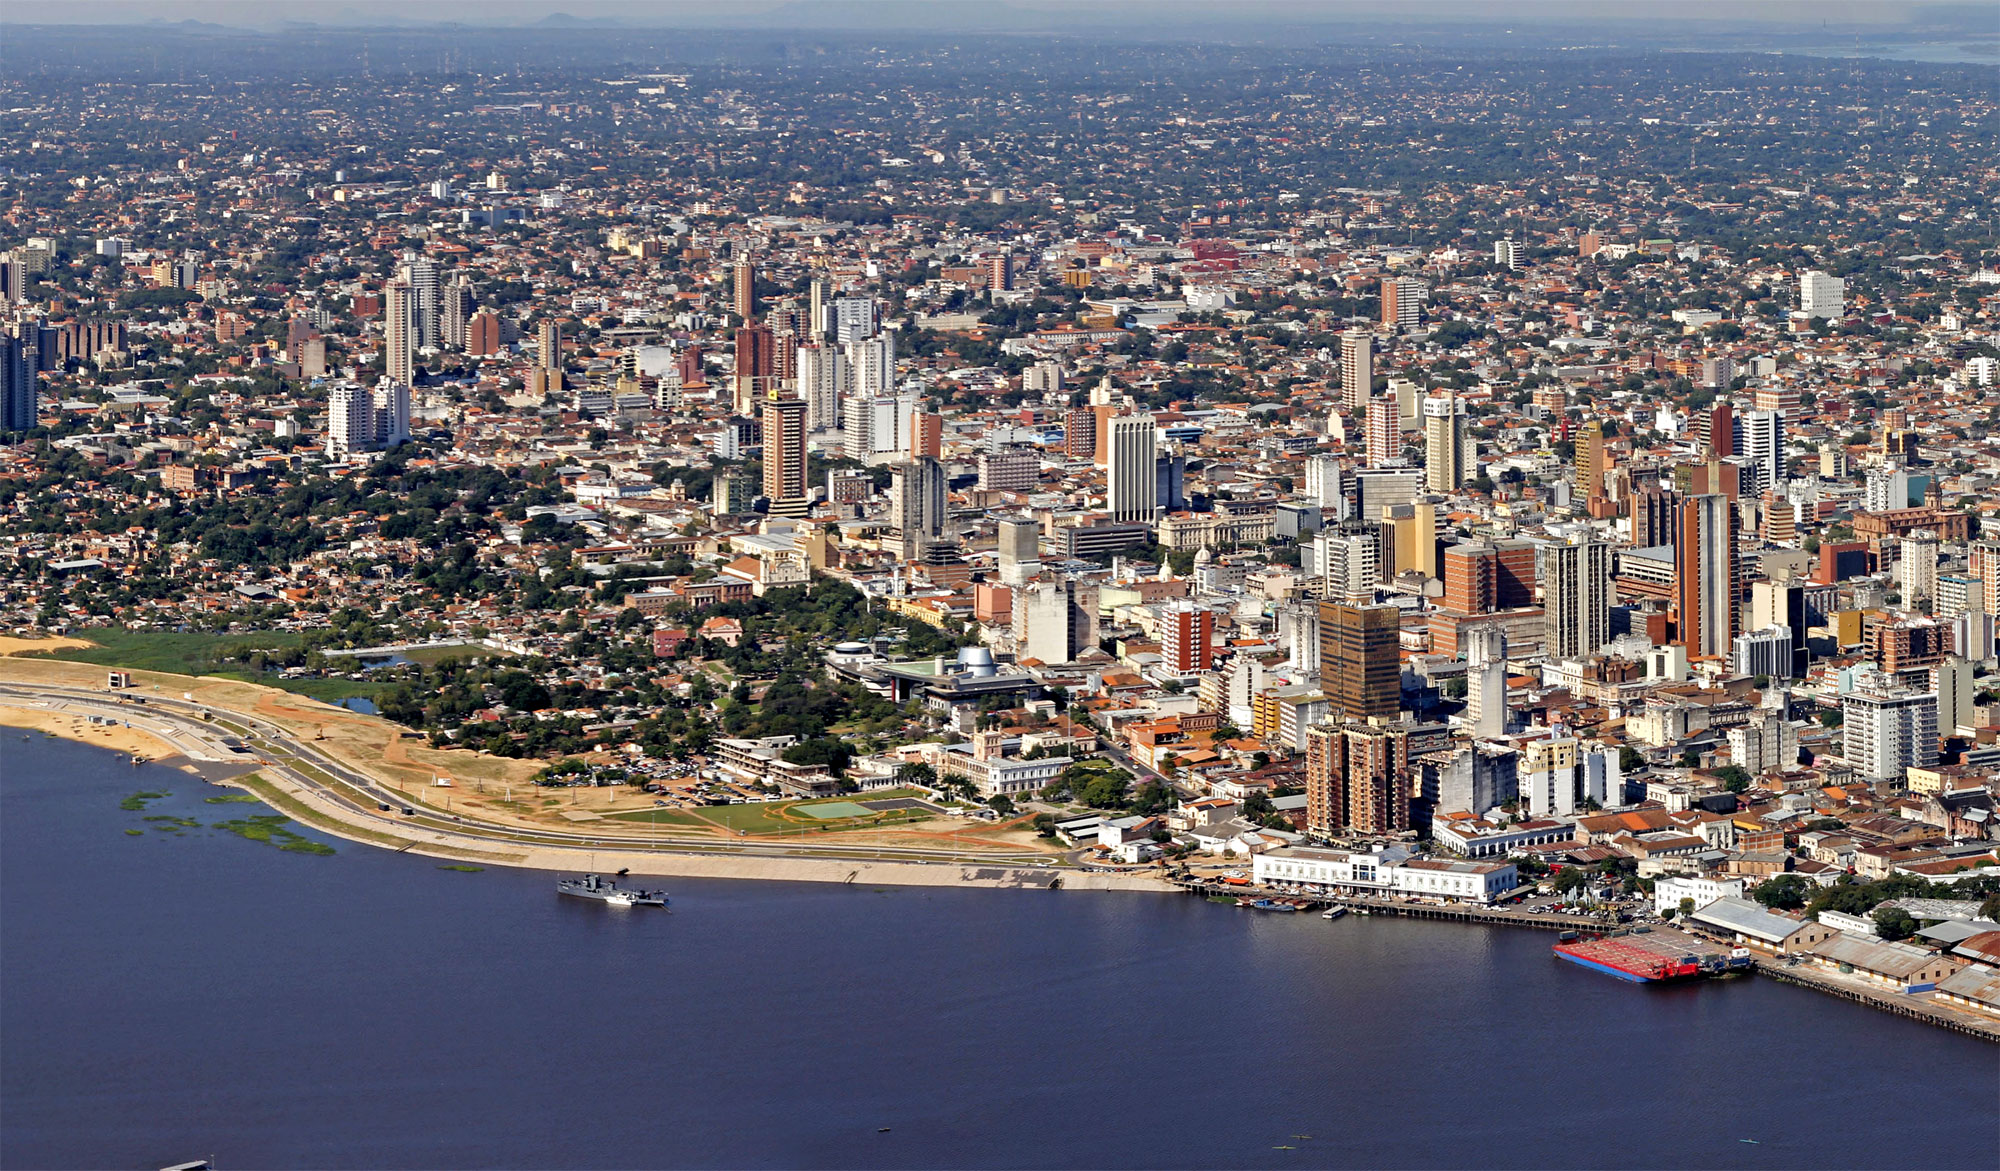 Se estima que Paraguay tendrá un crecimiento económico del 4,5% en 2018